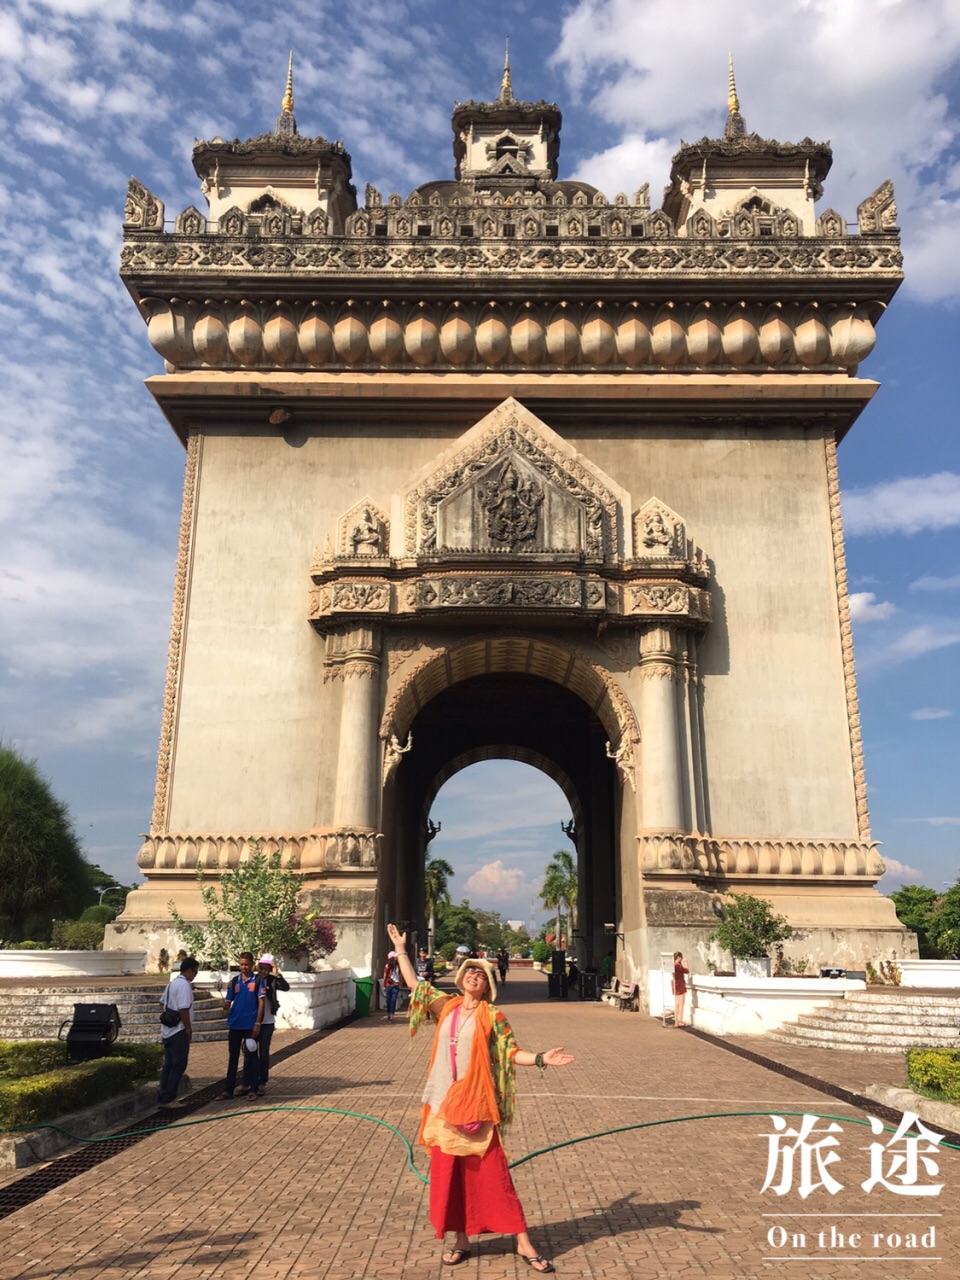 这是老挝人民的凯旋门